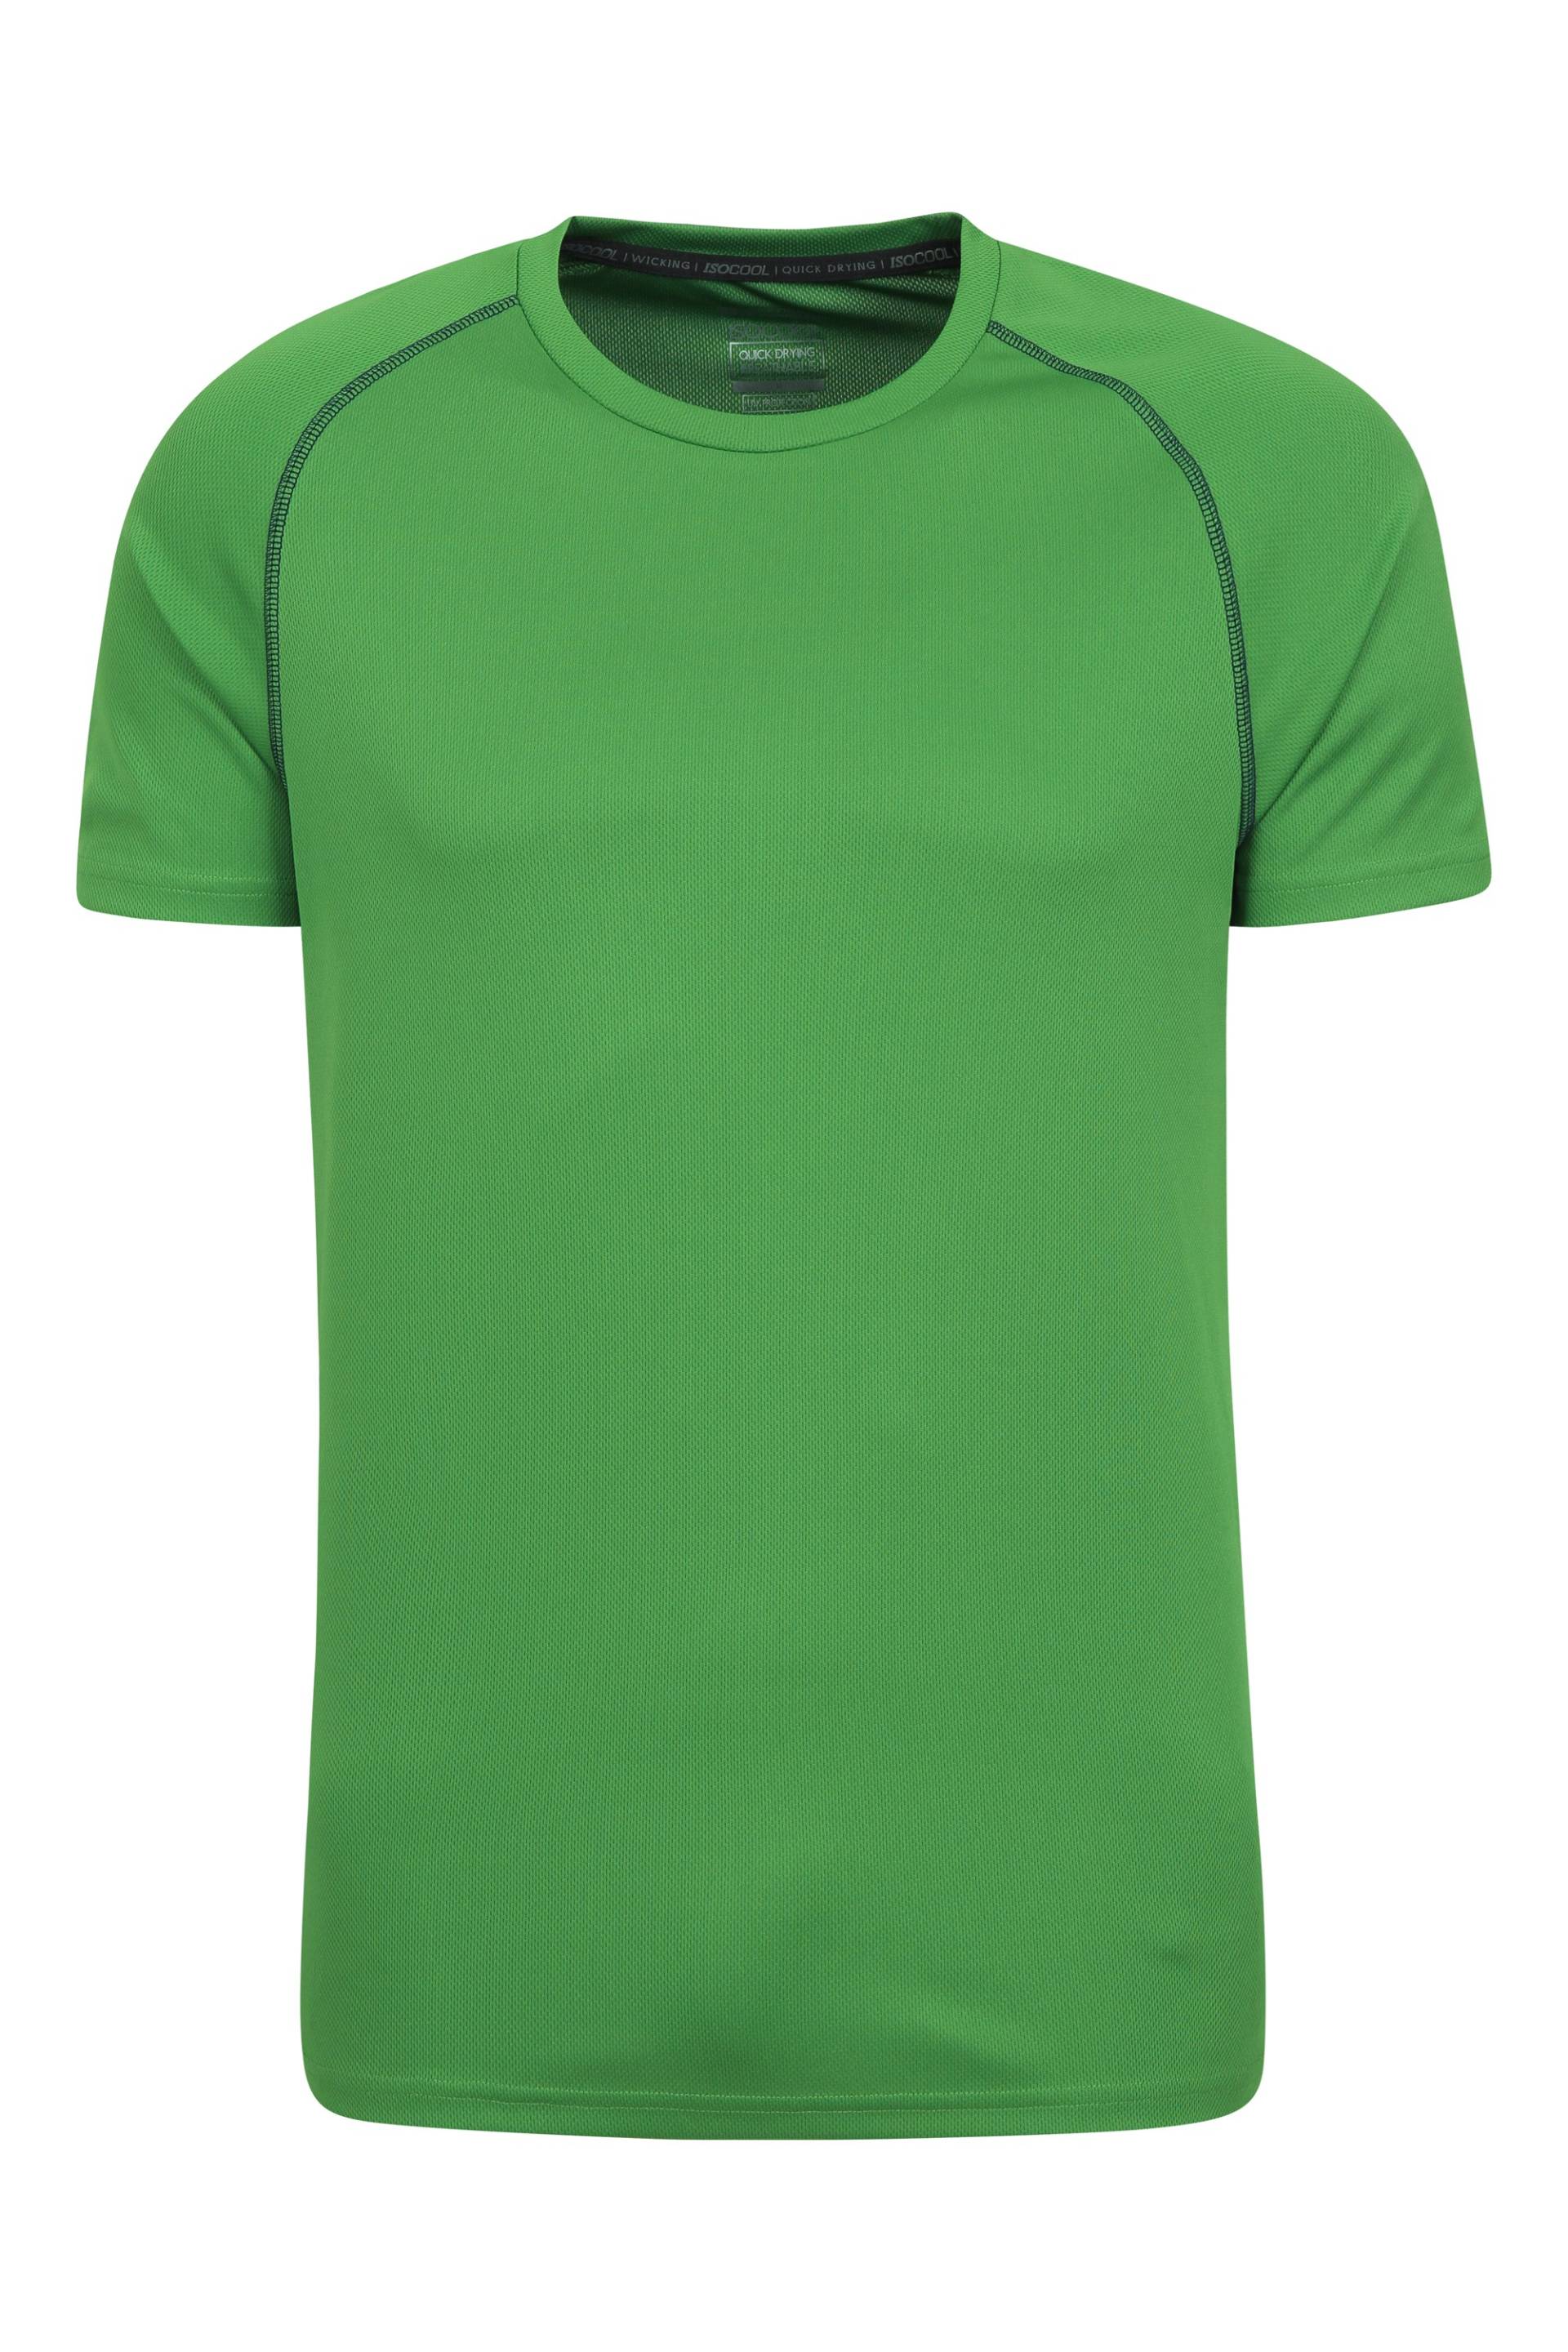 Endurance Herren T-Shirt - Grün von Mountain Warehouse